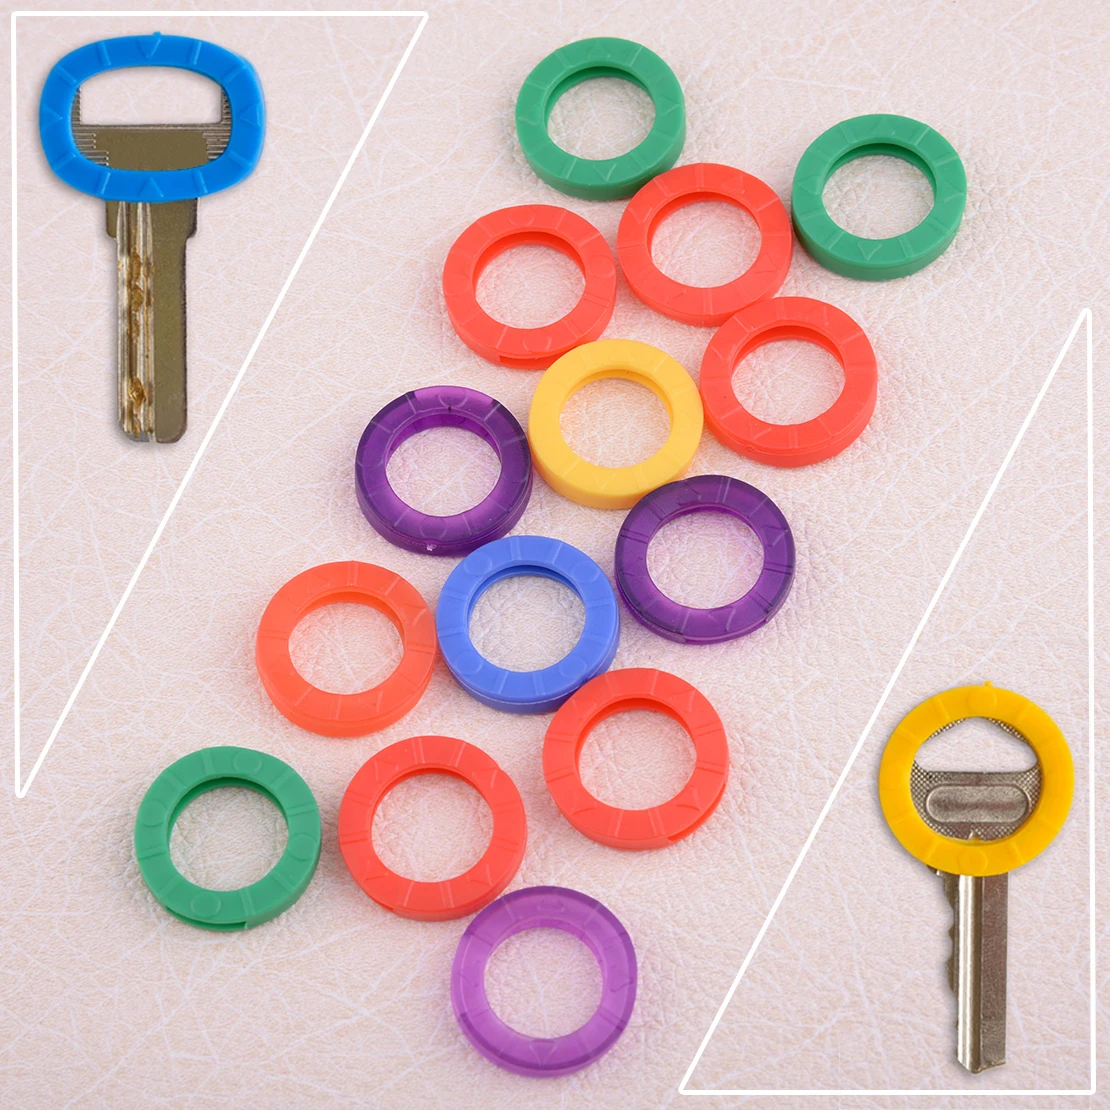 CITALL универсальные 16 шт. разноцветные идентификационные силиконовые кольца для ключей полые колпачки Чехлы для ключей идентификационные бирки брелки